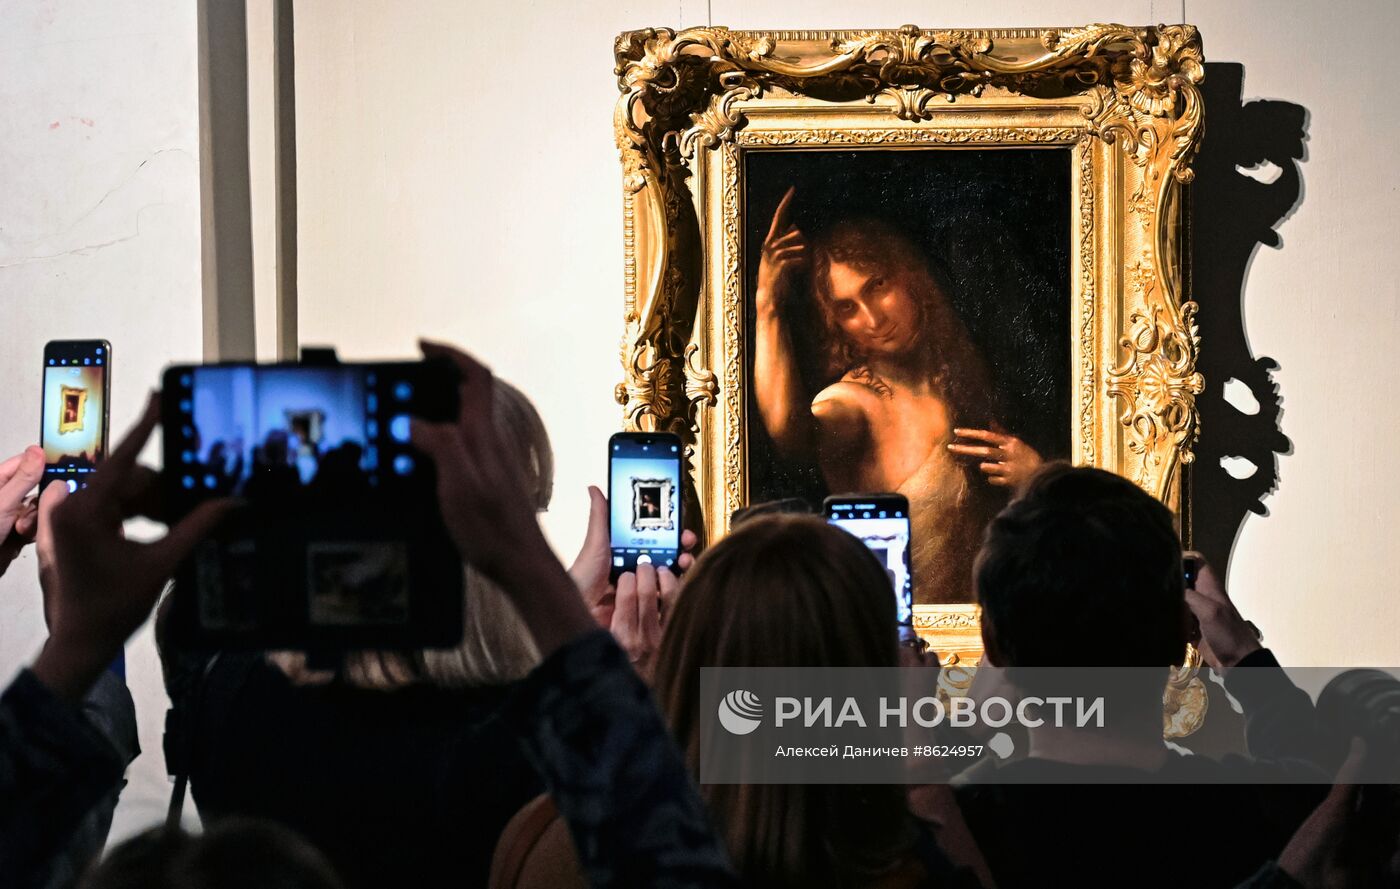 Открытие выставки "Новые загадки картин Леонардо да Винчи" в Санкт-Петербурге